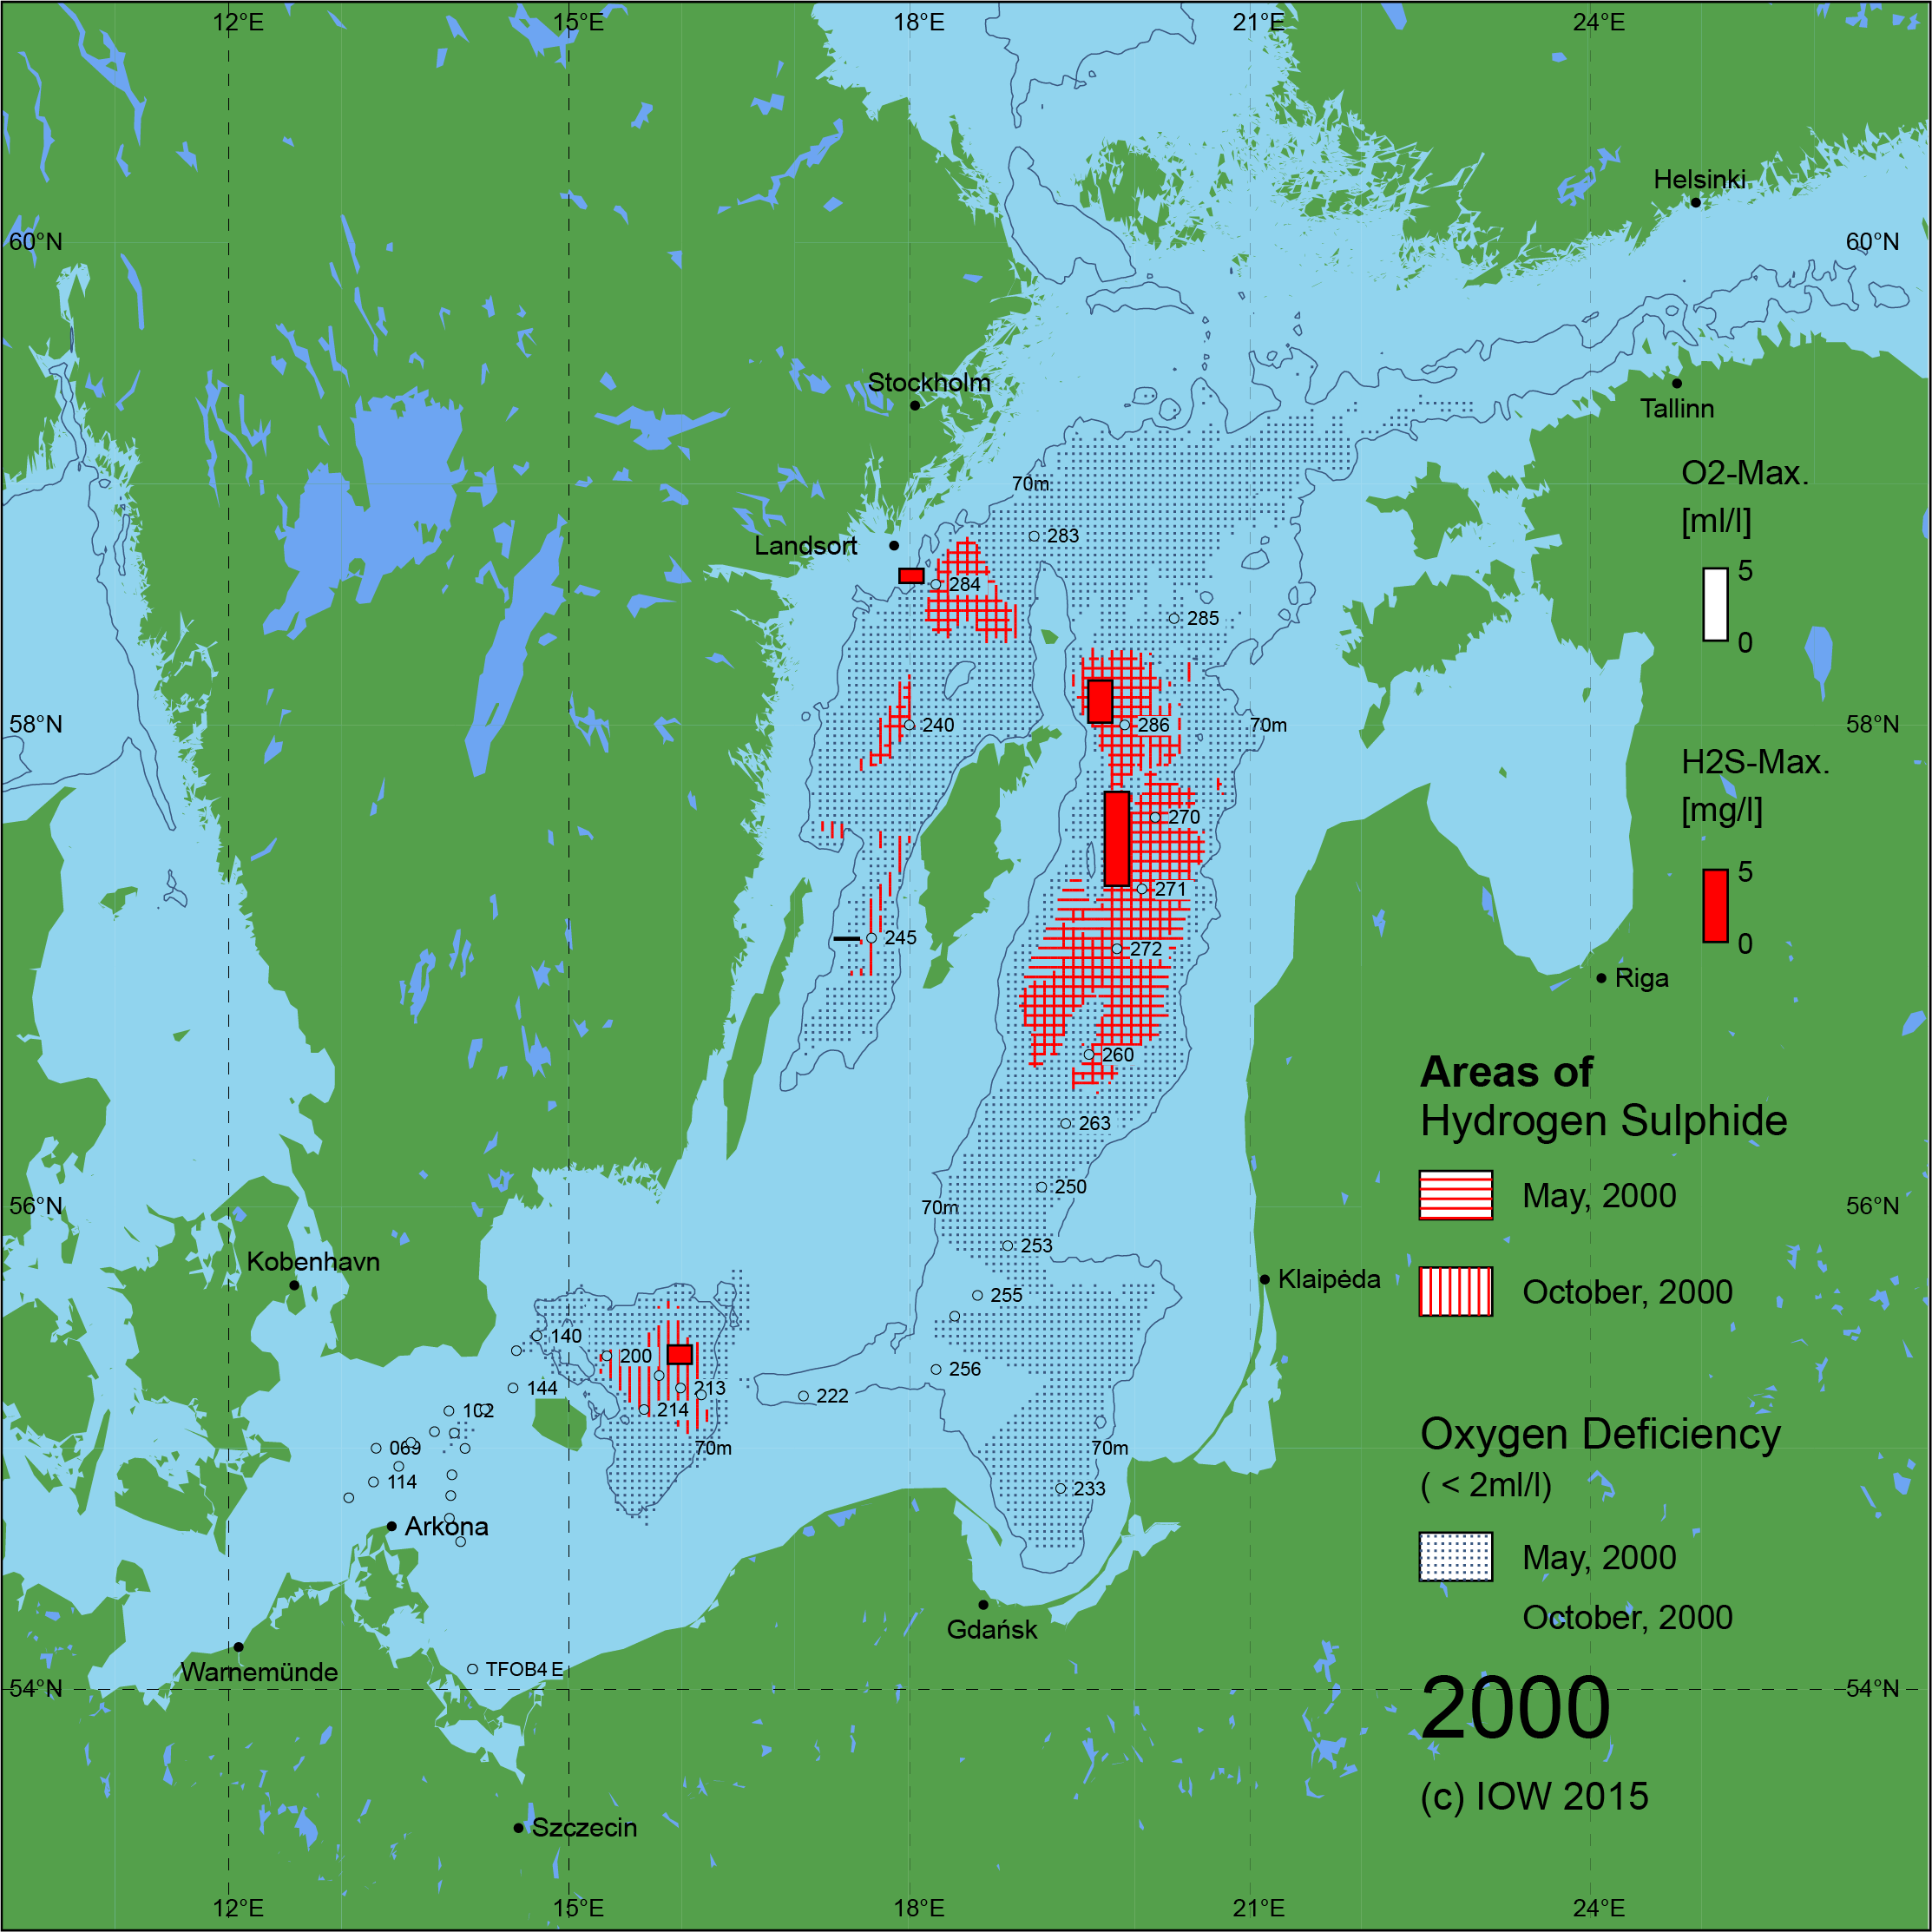 Sauerstoffarme und sauerstofffreie Gebiete in der Ostsee - 2000